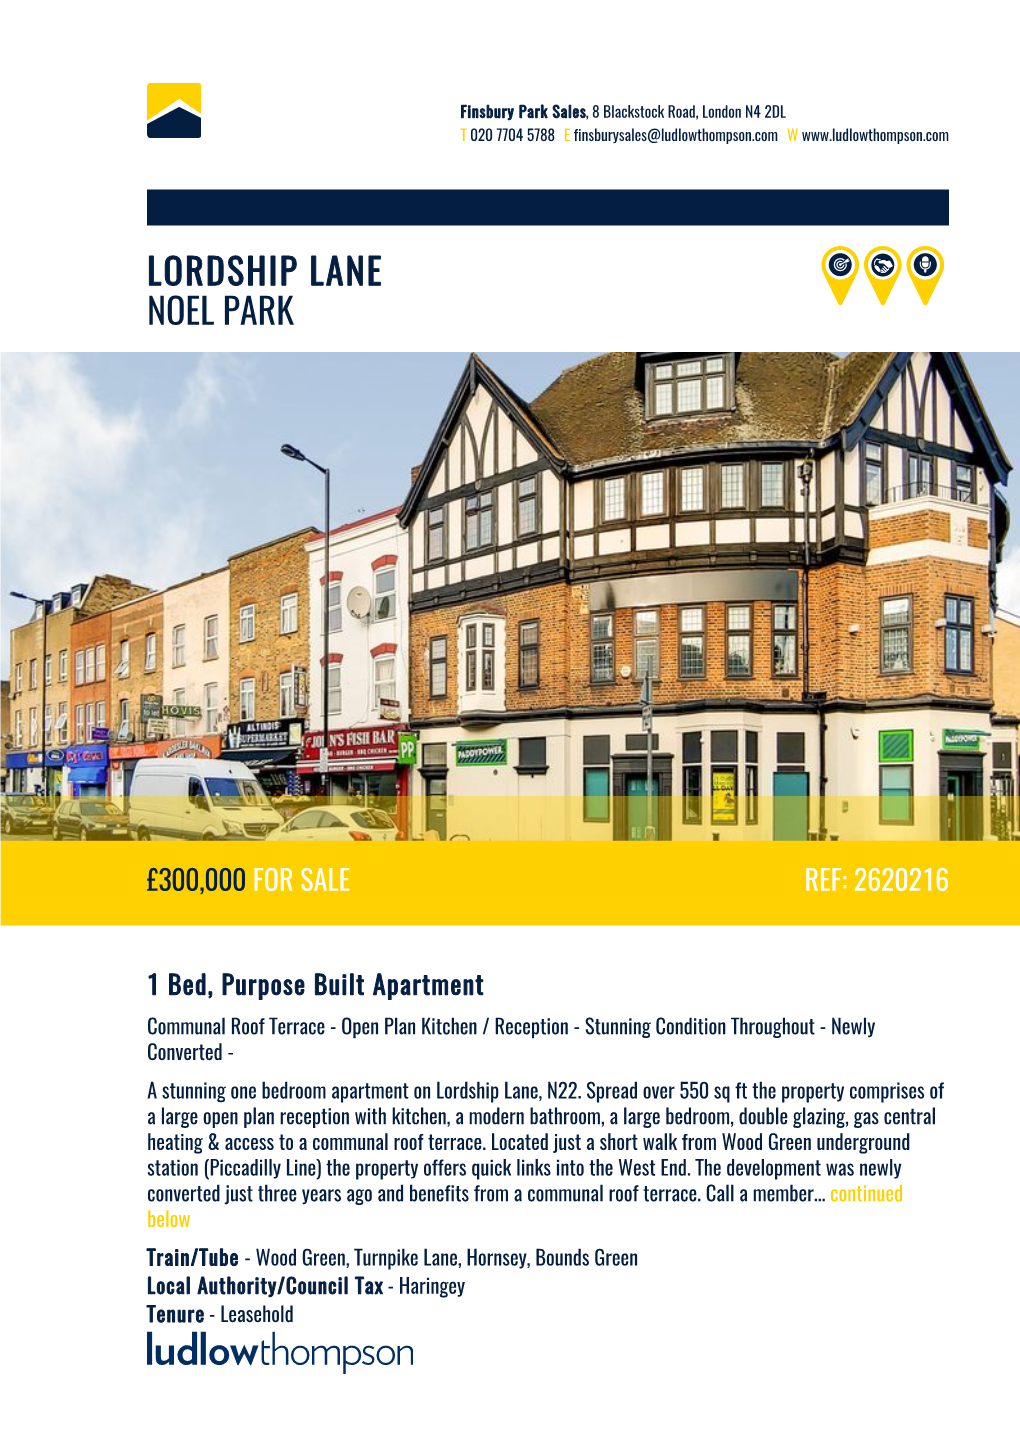 Lordship Lane Noel Park